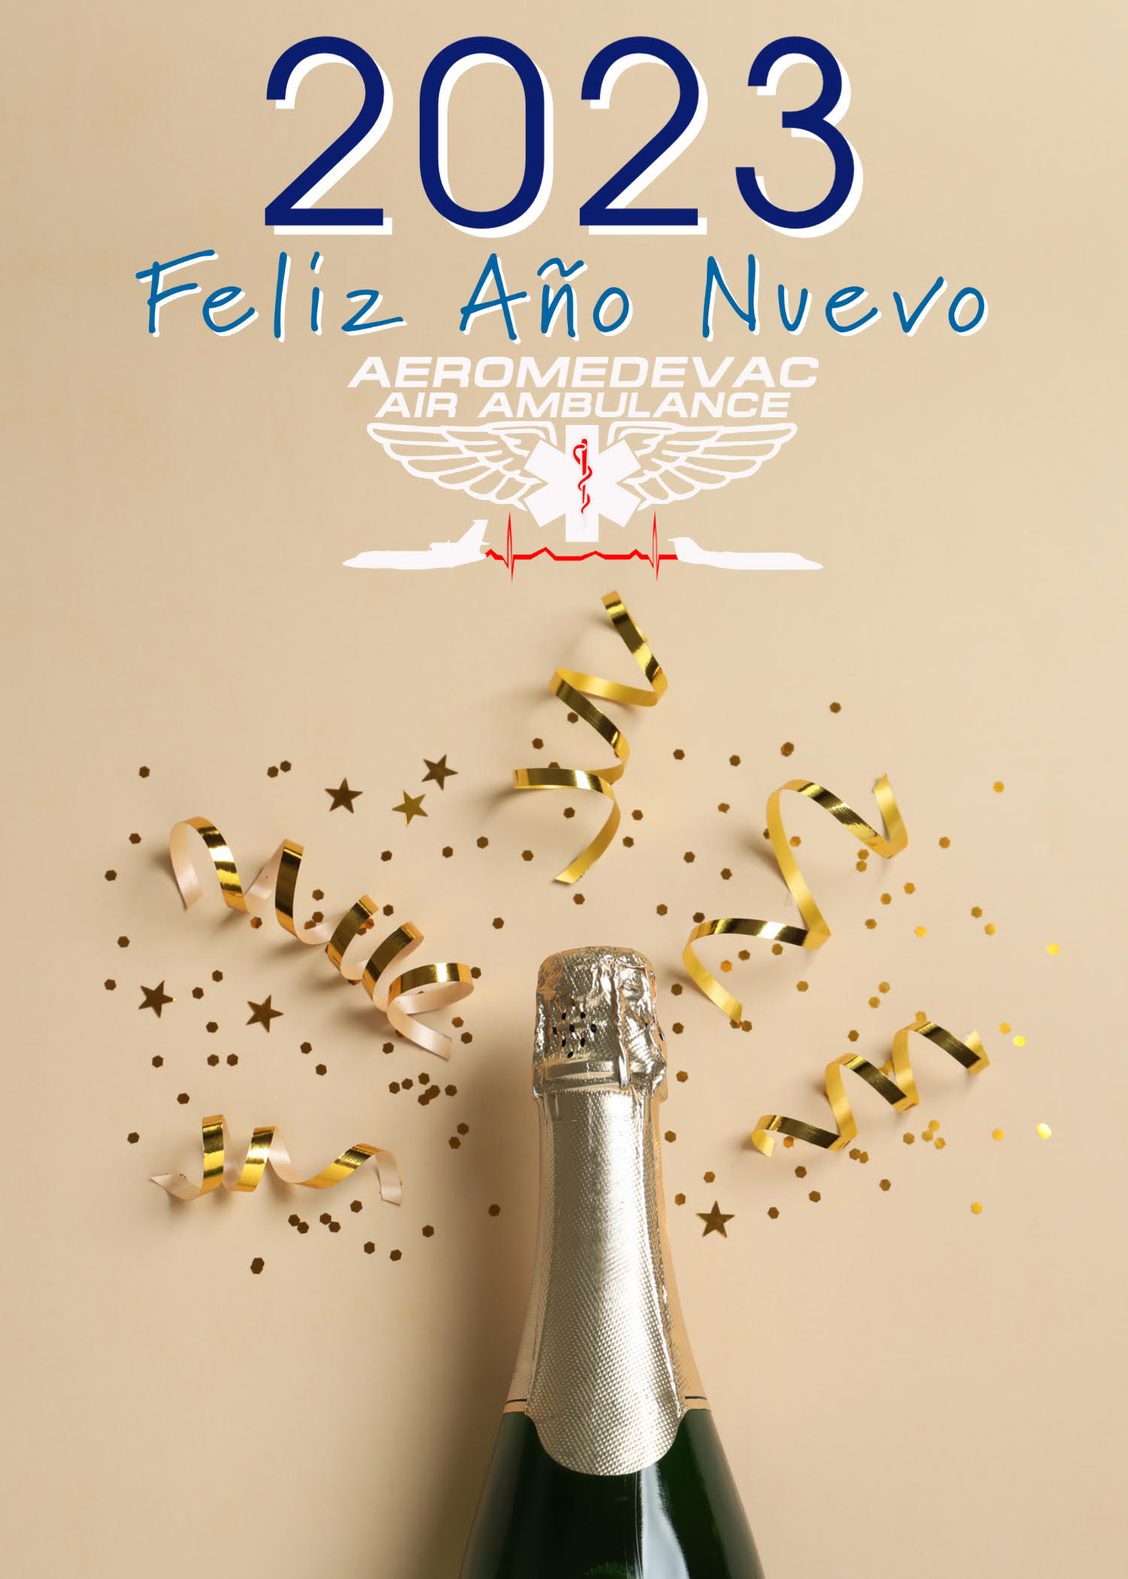 Botella de champán y confeti de Año Nuevo para celebrar el comienzo de 2023 y una nueva presencia web digital para Aeromedevac Air Ambulance.